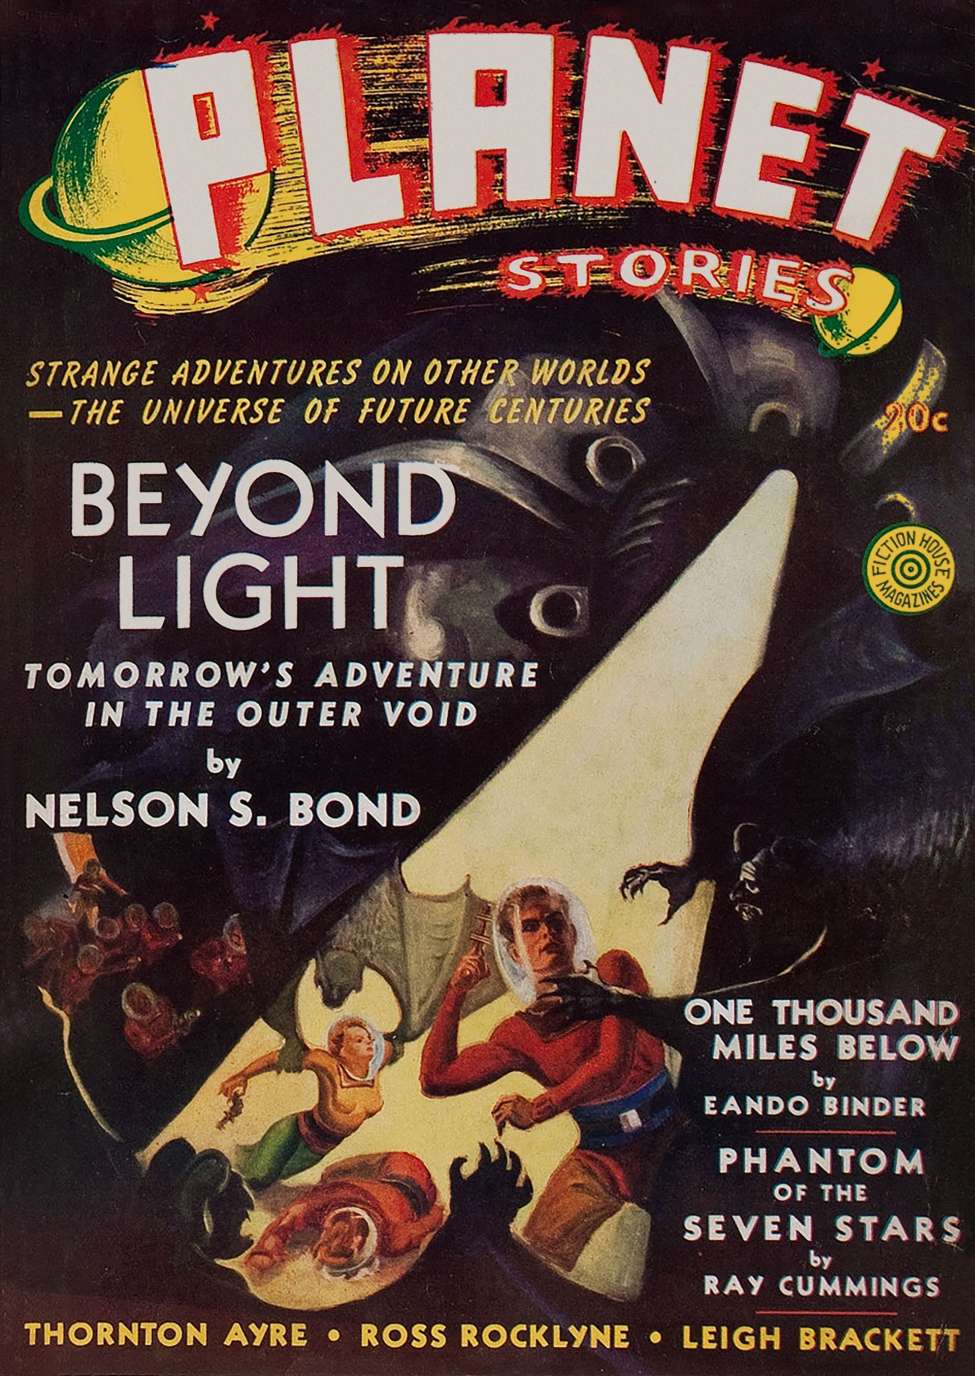 Book Cover For Planet Stories v1 5 - Beyond Light - Nelson S. Bond